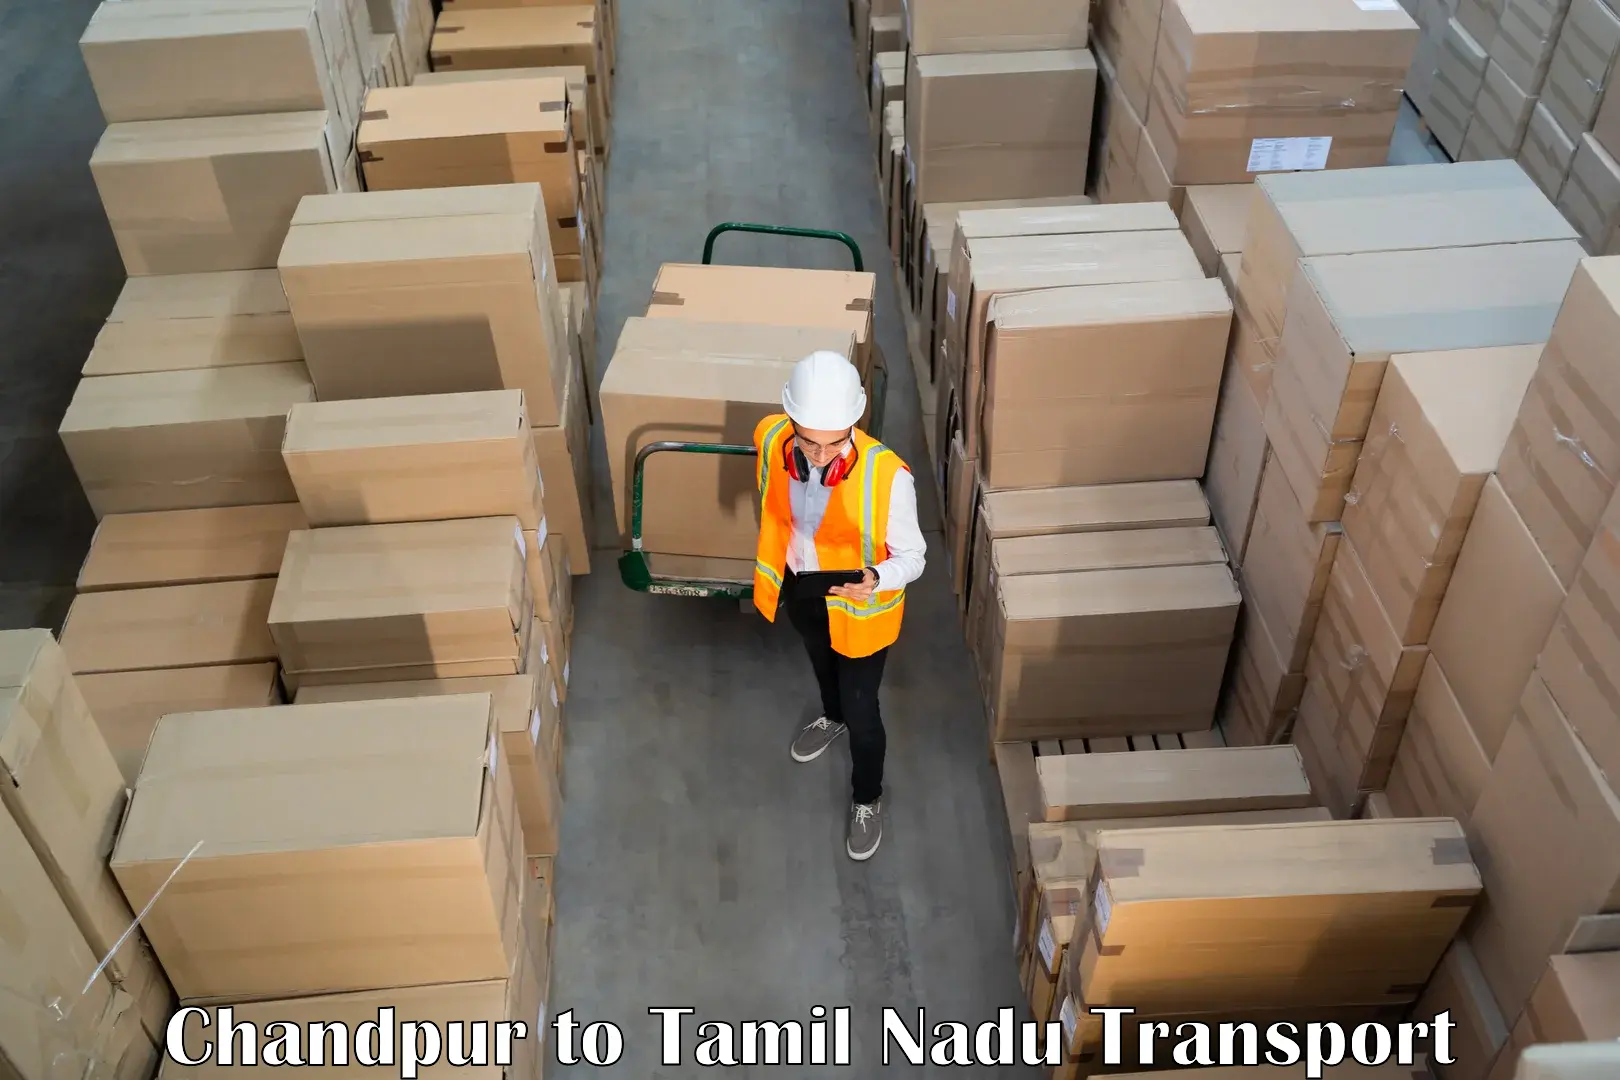 Air cargo transport services Chandpur to Tamil Nadu